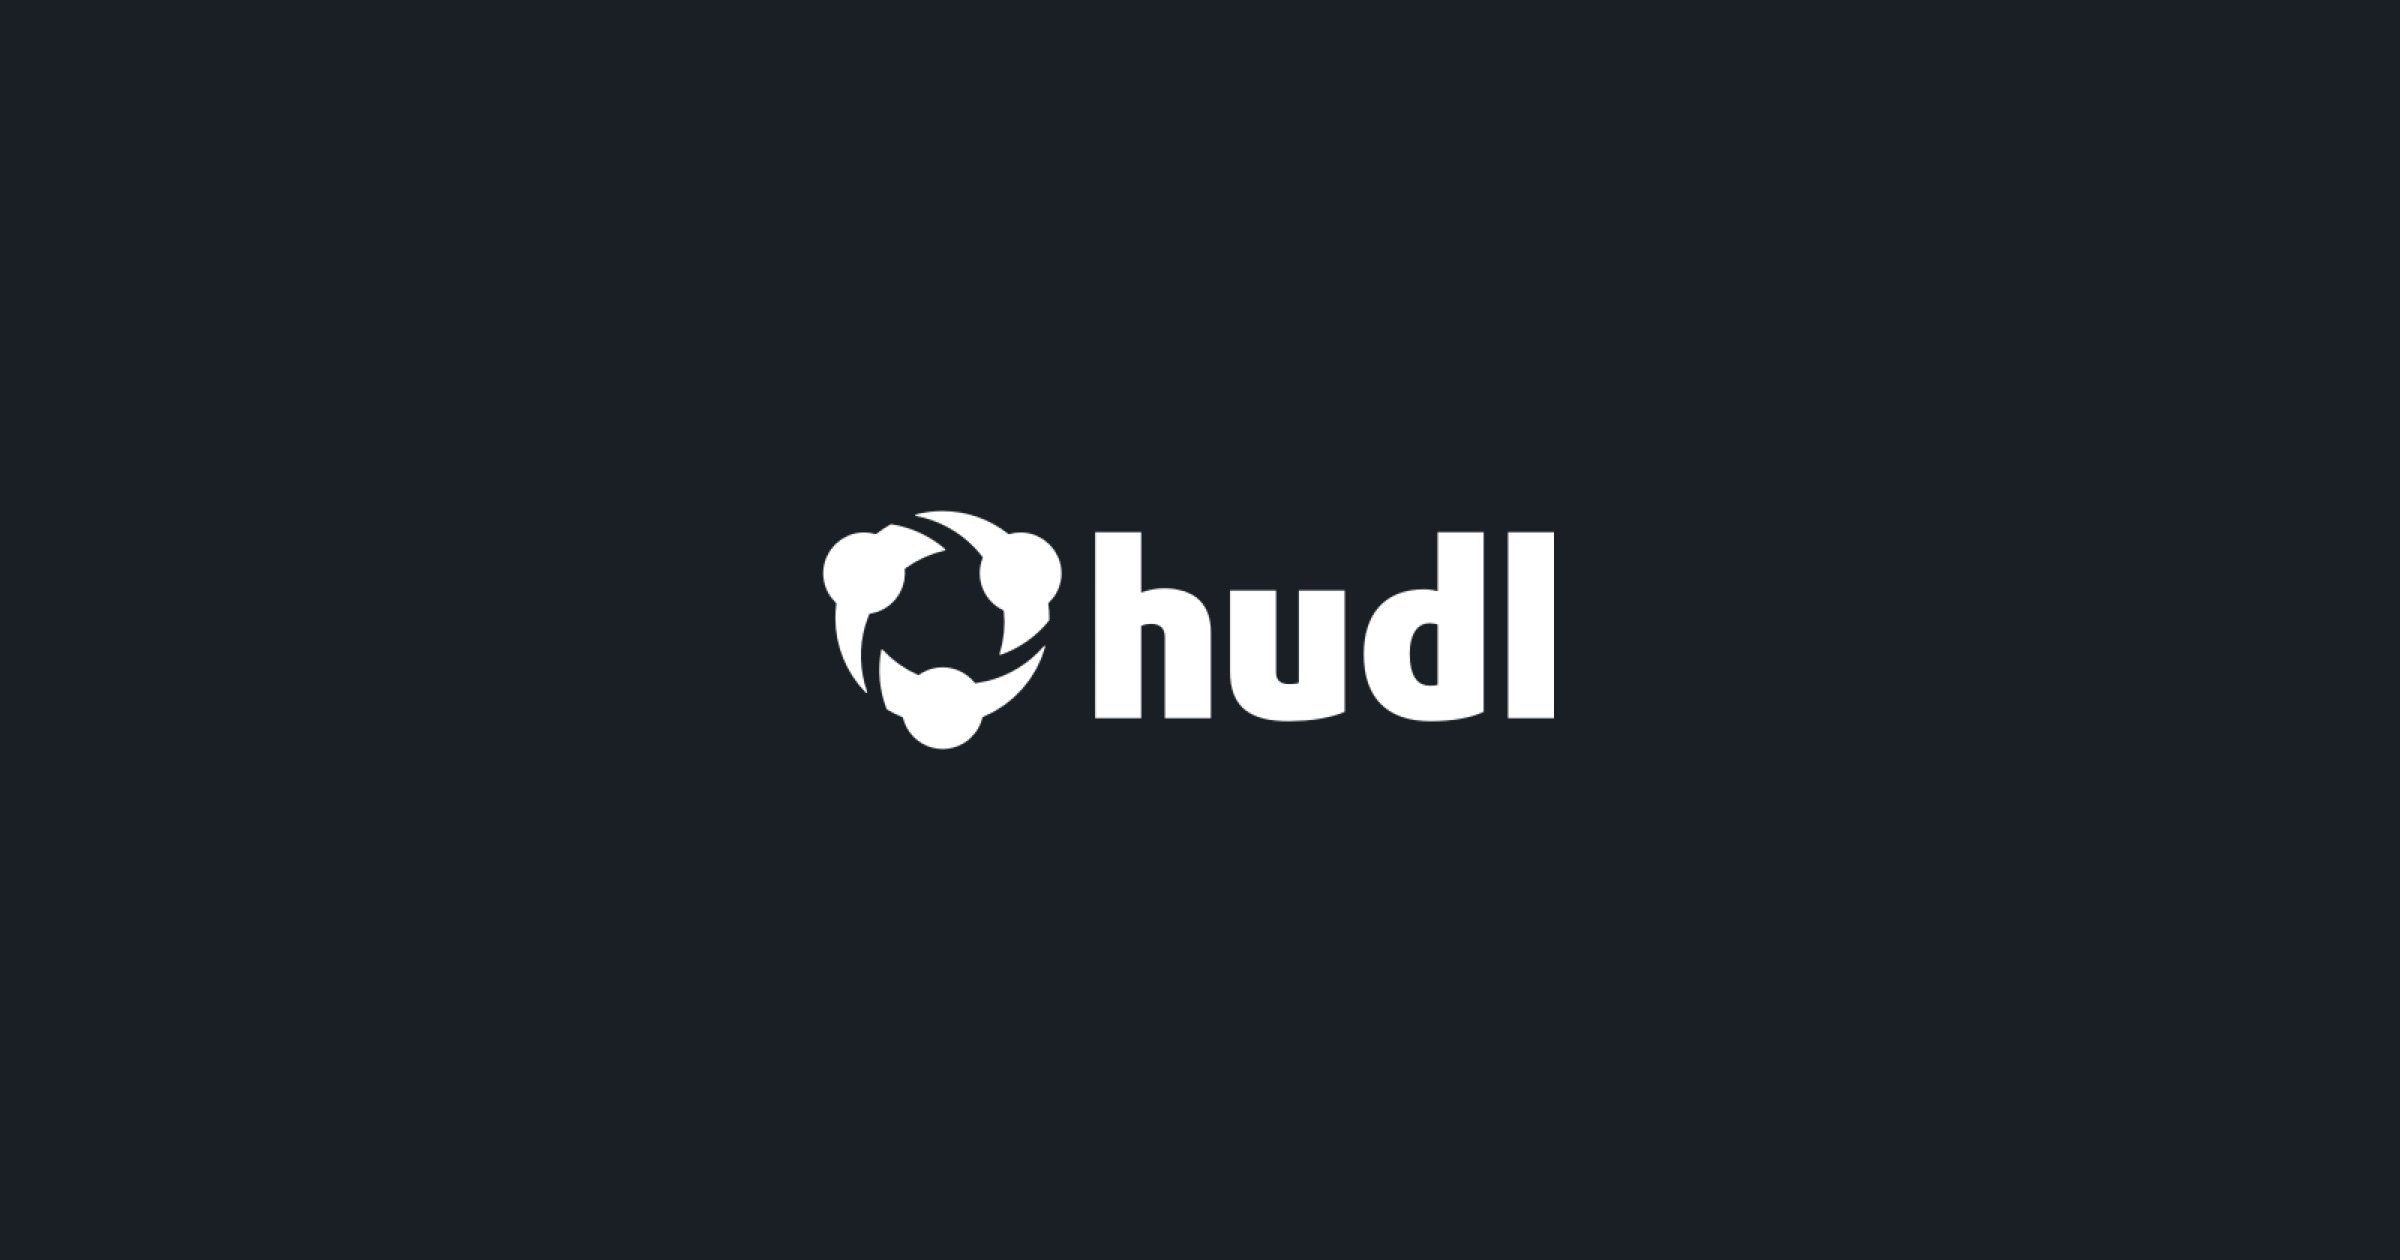 www.hudl.com